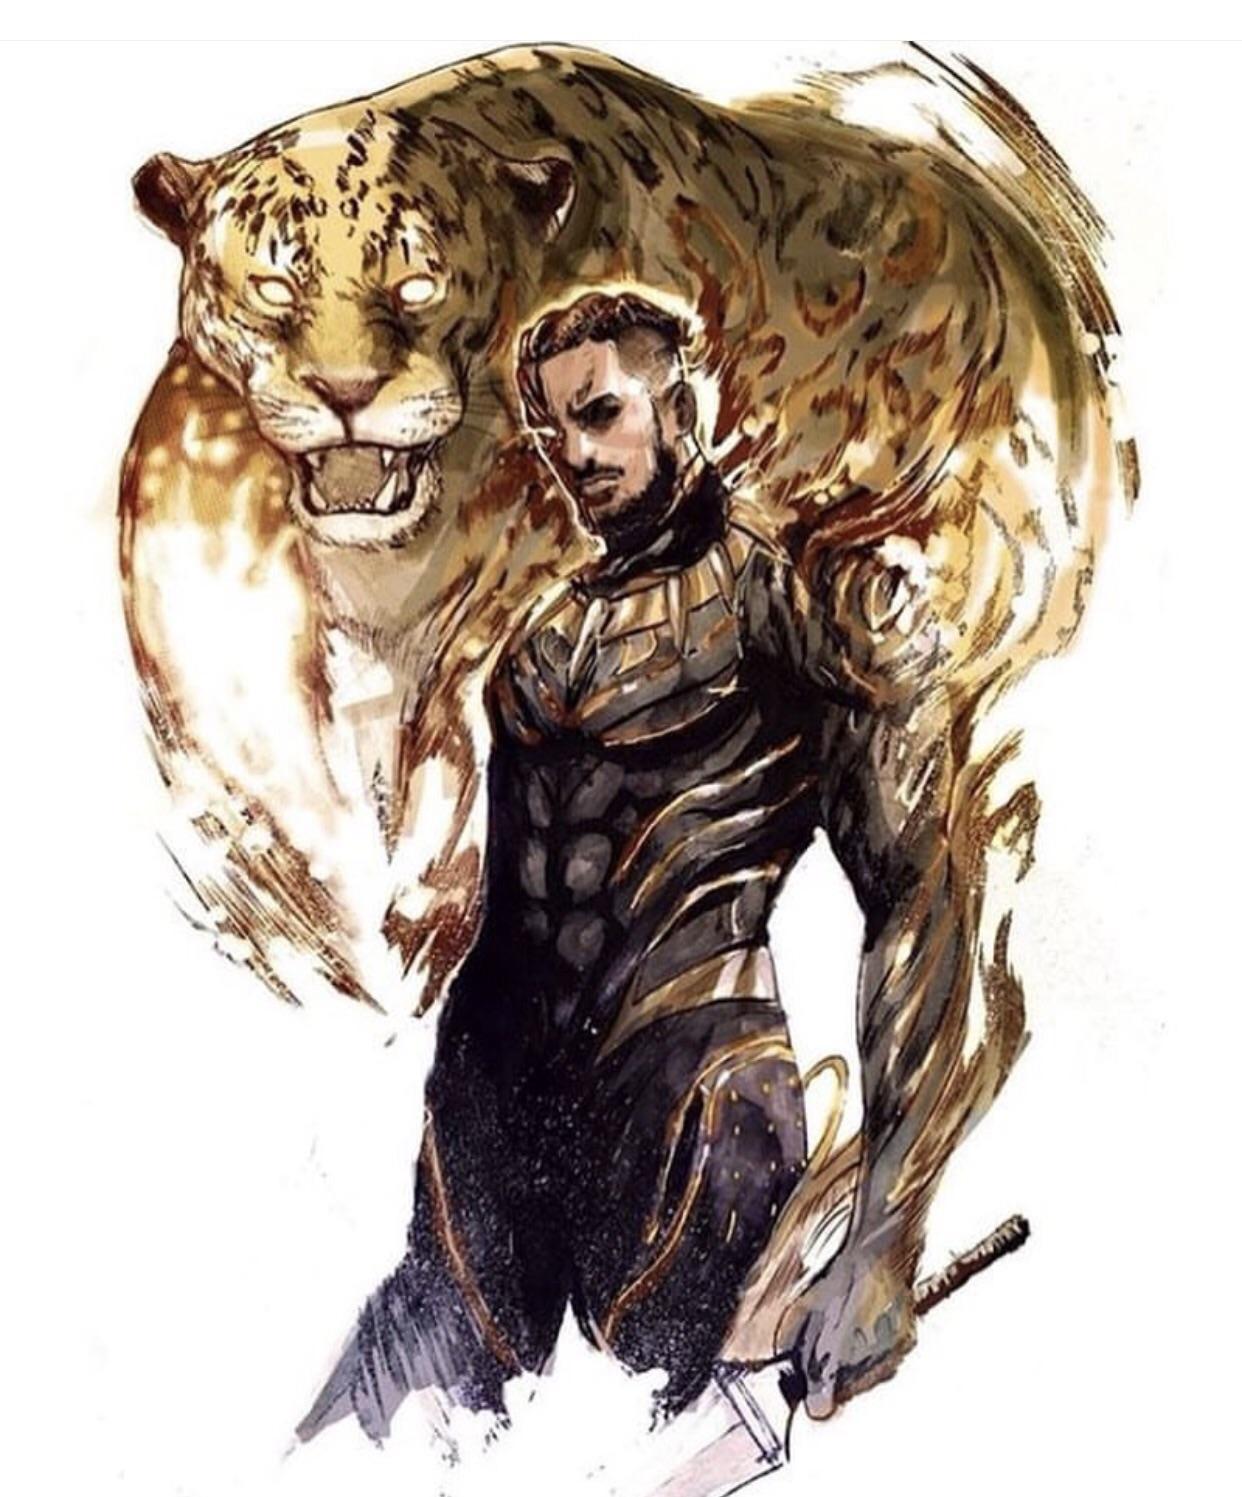 Golden Jaguar aka Killmonger